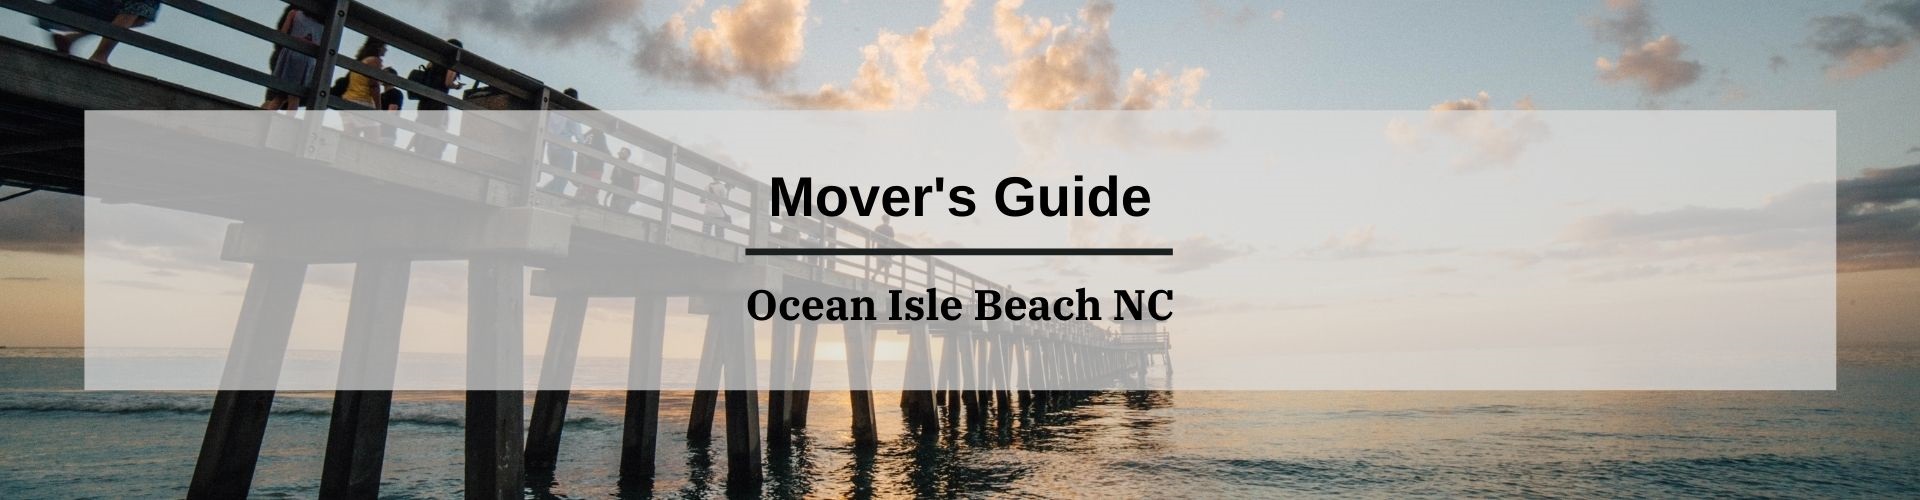 Mover's Guide Ocean Isle Beach NC